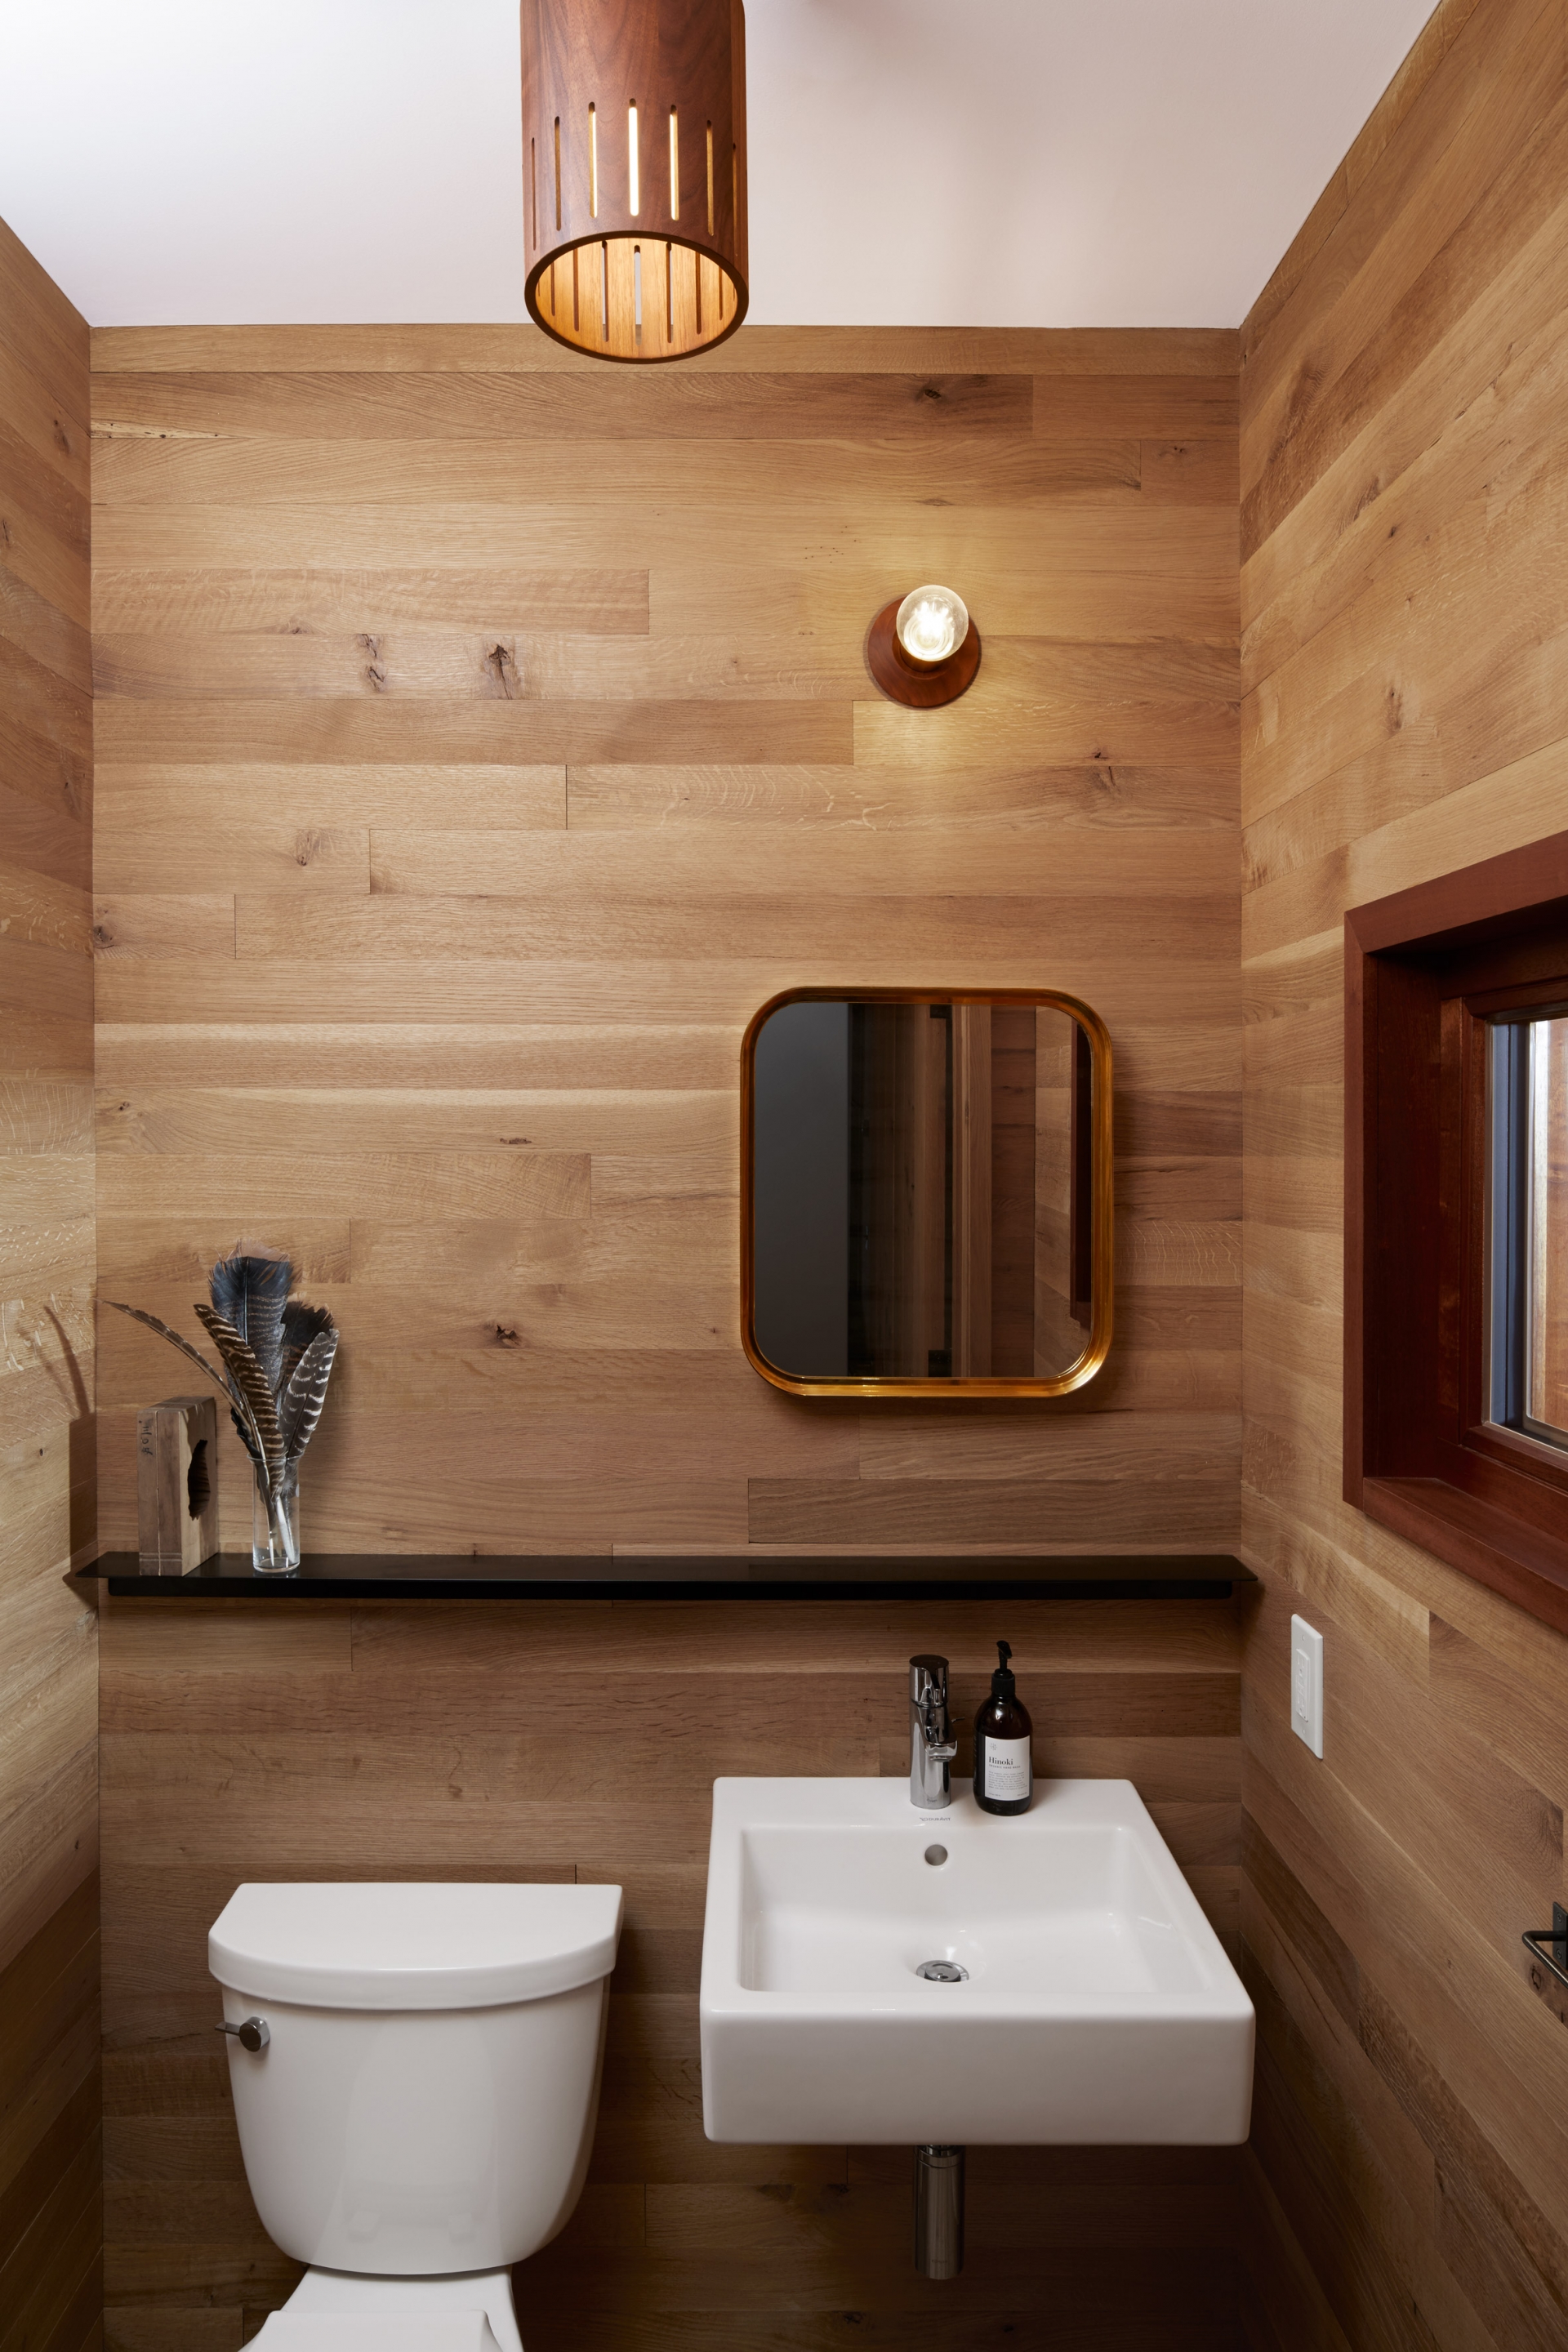 Phòng tắm kết hợp nhà vệ sinh tuy nhỏ nhưng tràn đầy cảm hứng với hệ thống đèn chiếu sáng ấm áp cùng nội thất gỗ màu trầm xua tan đi sự ẩm ướt và lạnh lẽo thường thấy trong phòng tắm.